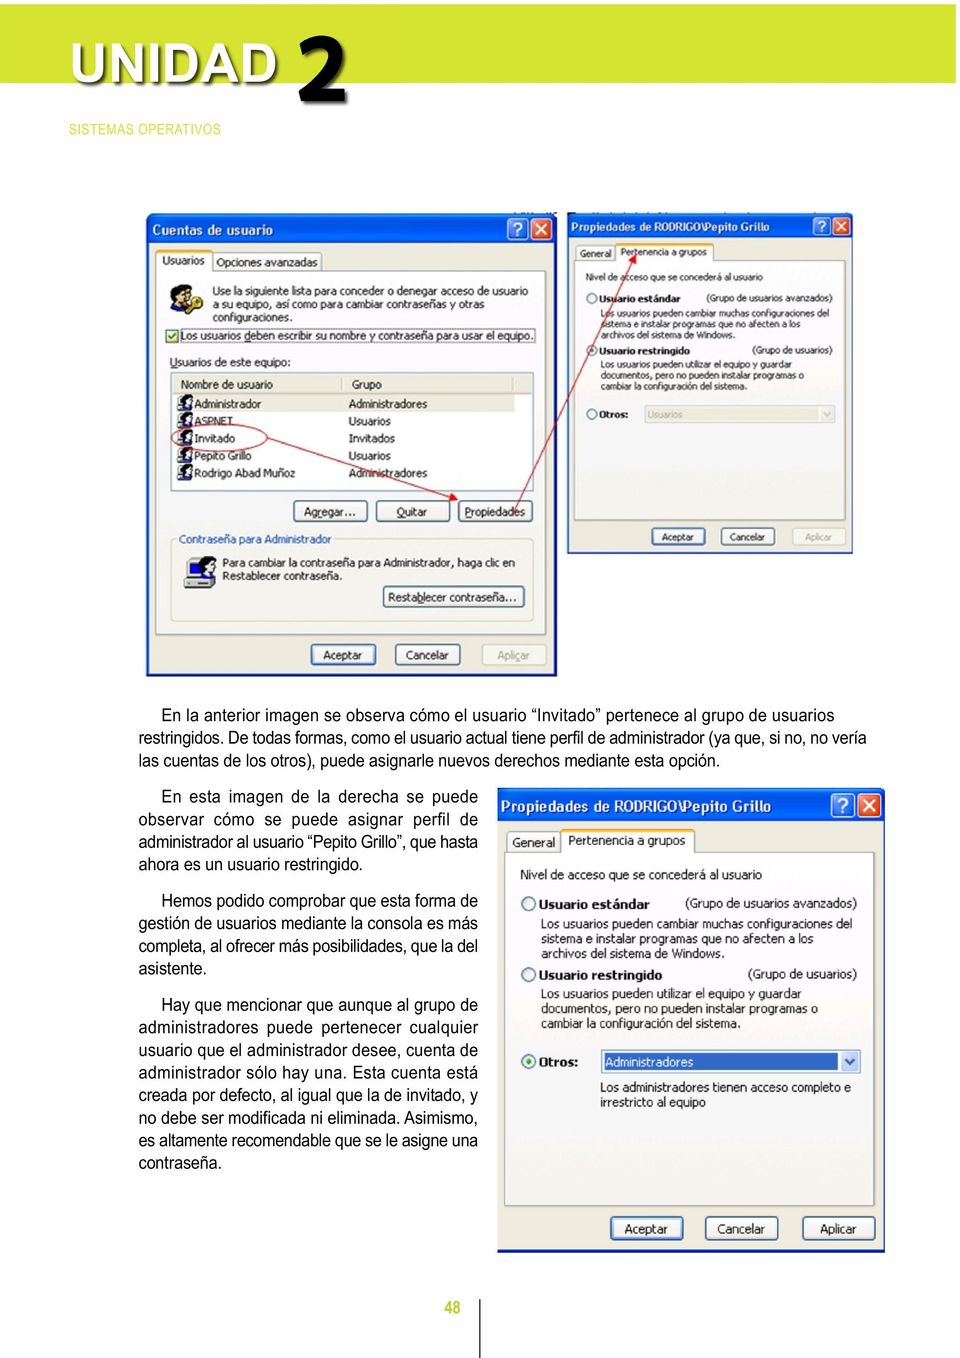 En esta imagen de la derecha se puede observar cómo se puede asignar perfil de administrador al usuario Pepito Grillo, que hasta ahora es un usuario restringido.